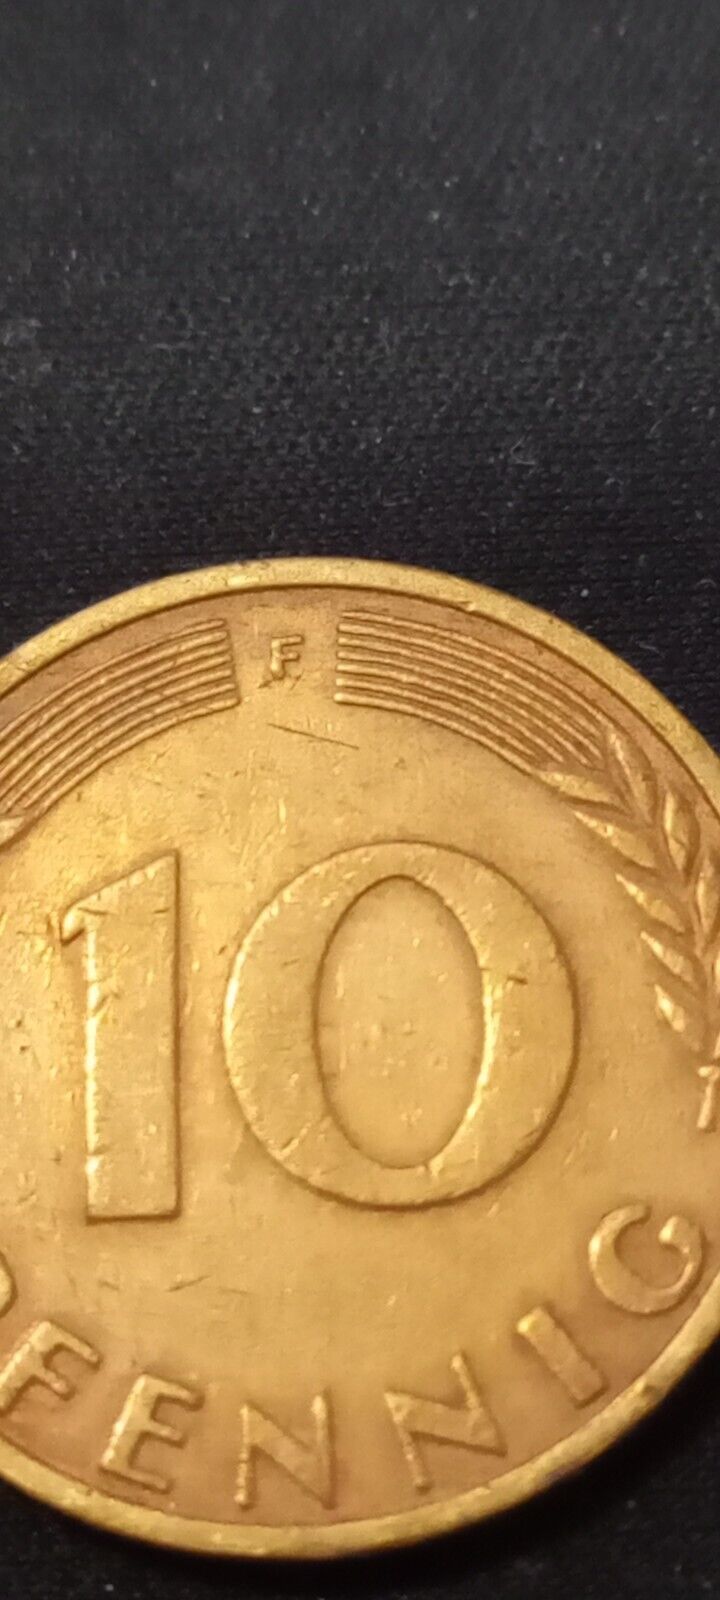 Bundesrepublic Deutschland  10 Pfennig 1950 F Coin, Rare